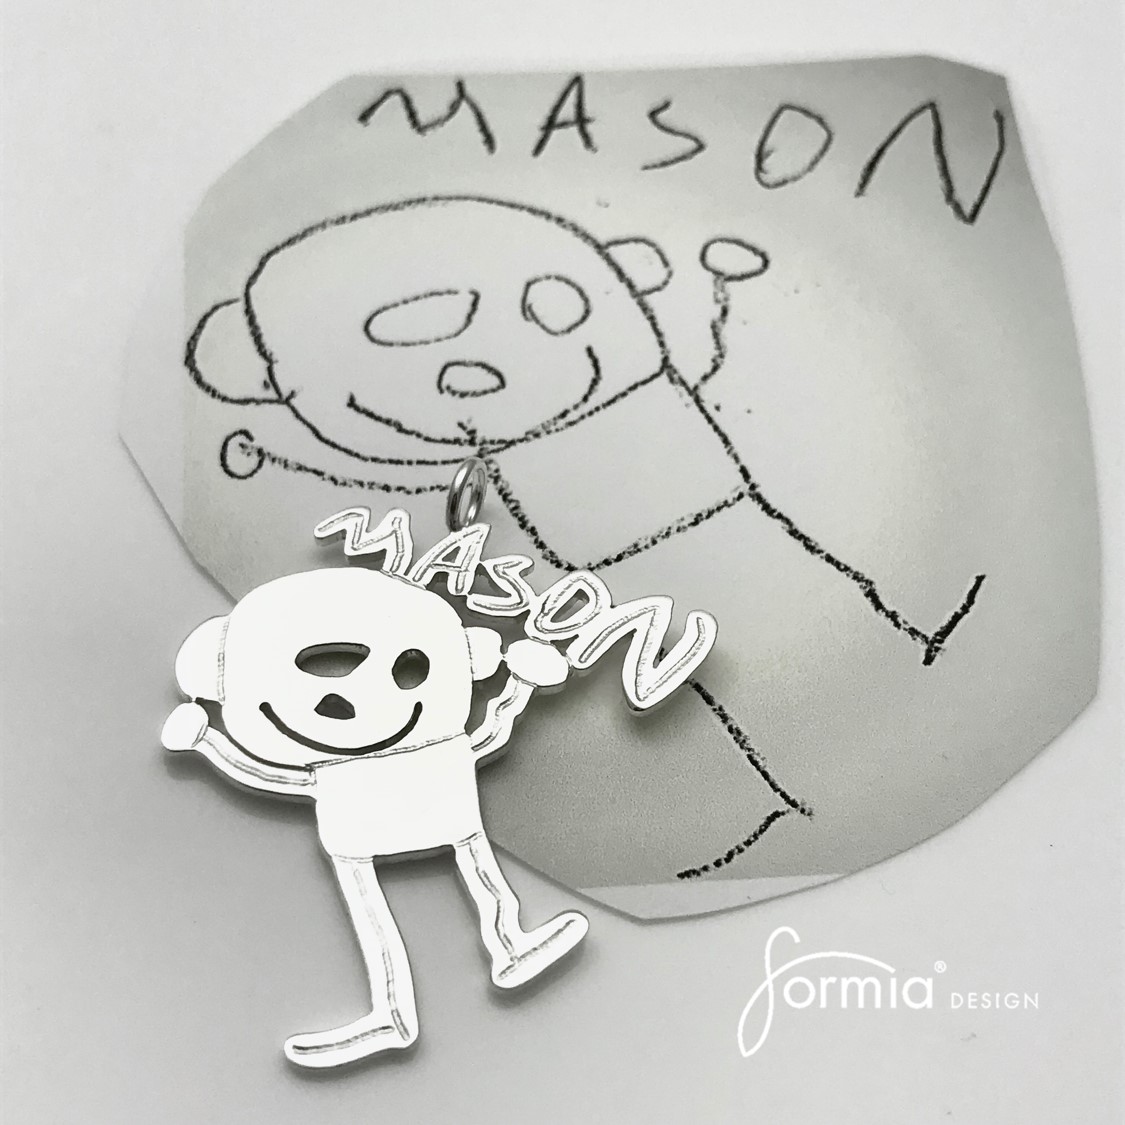 Moms best birthday present mason name portrait for design artwork pendant